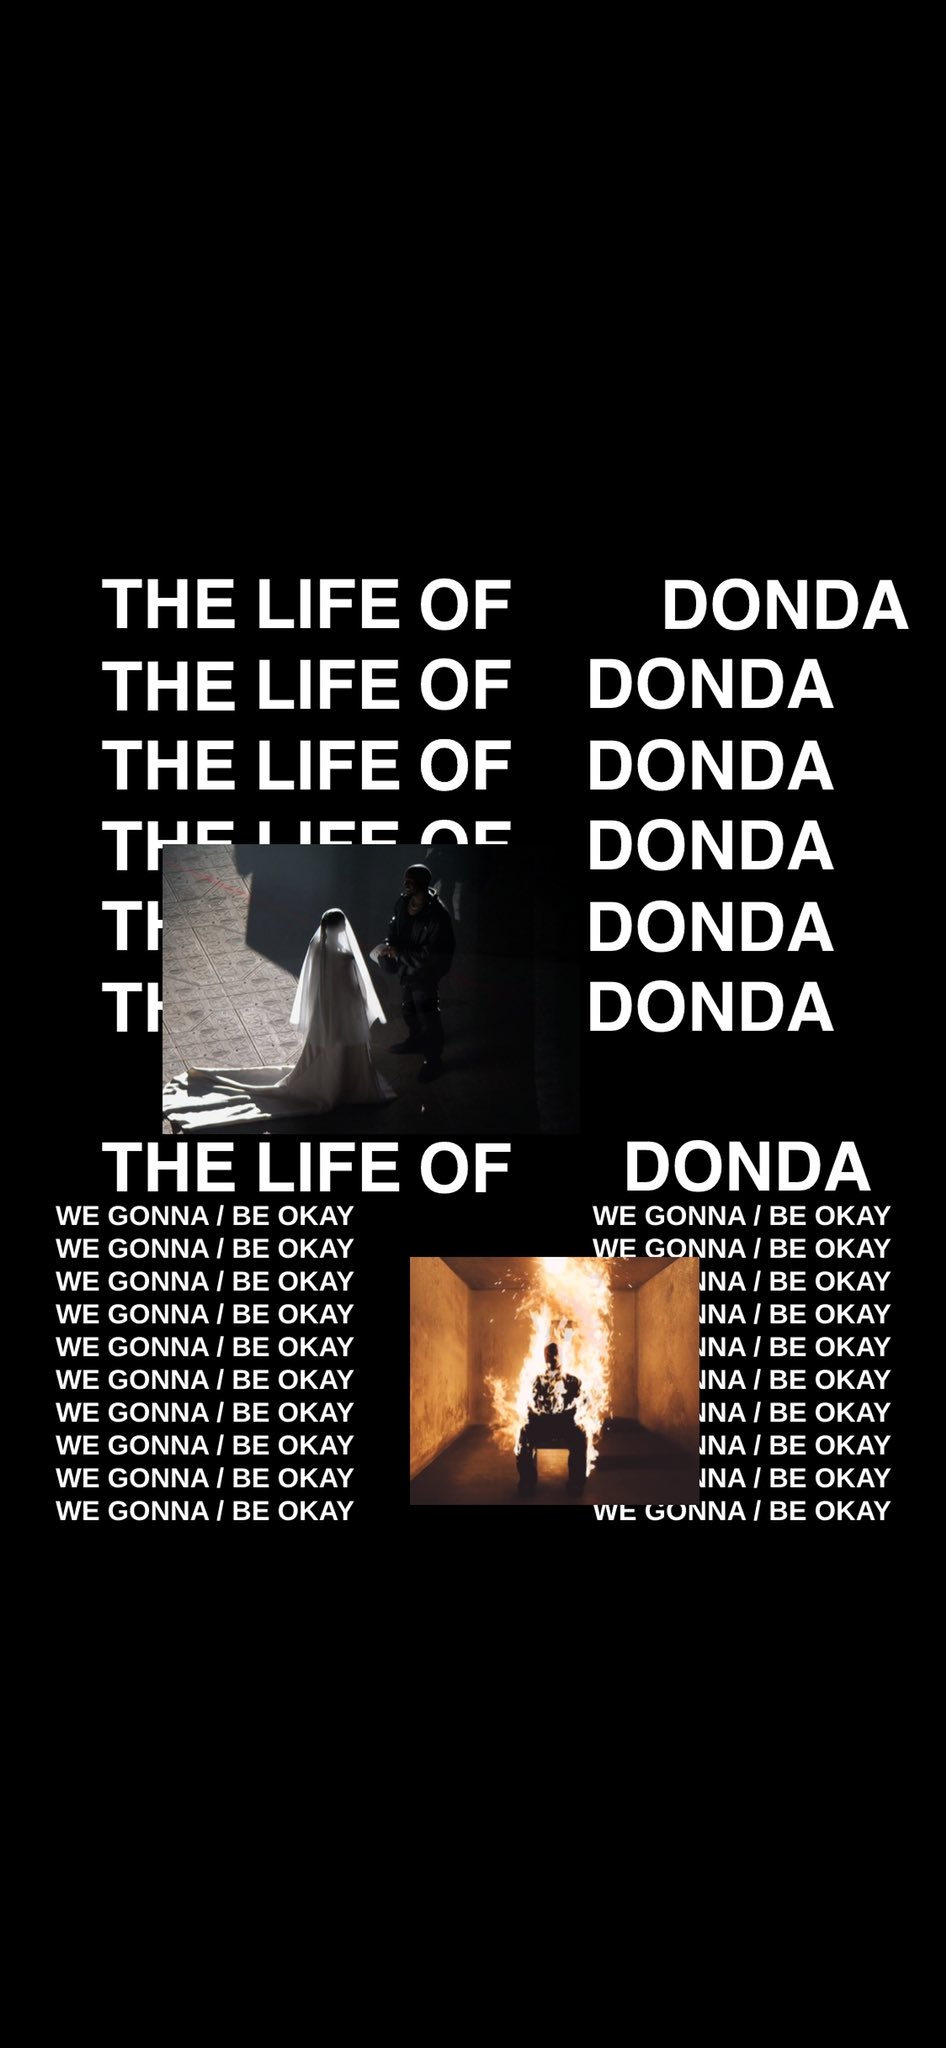 DONDA  Kanye  Kanye west wallpaper Hiphop wallpapers Kanye west